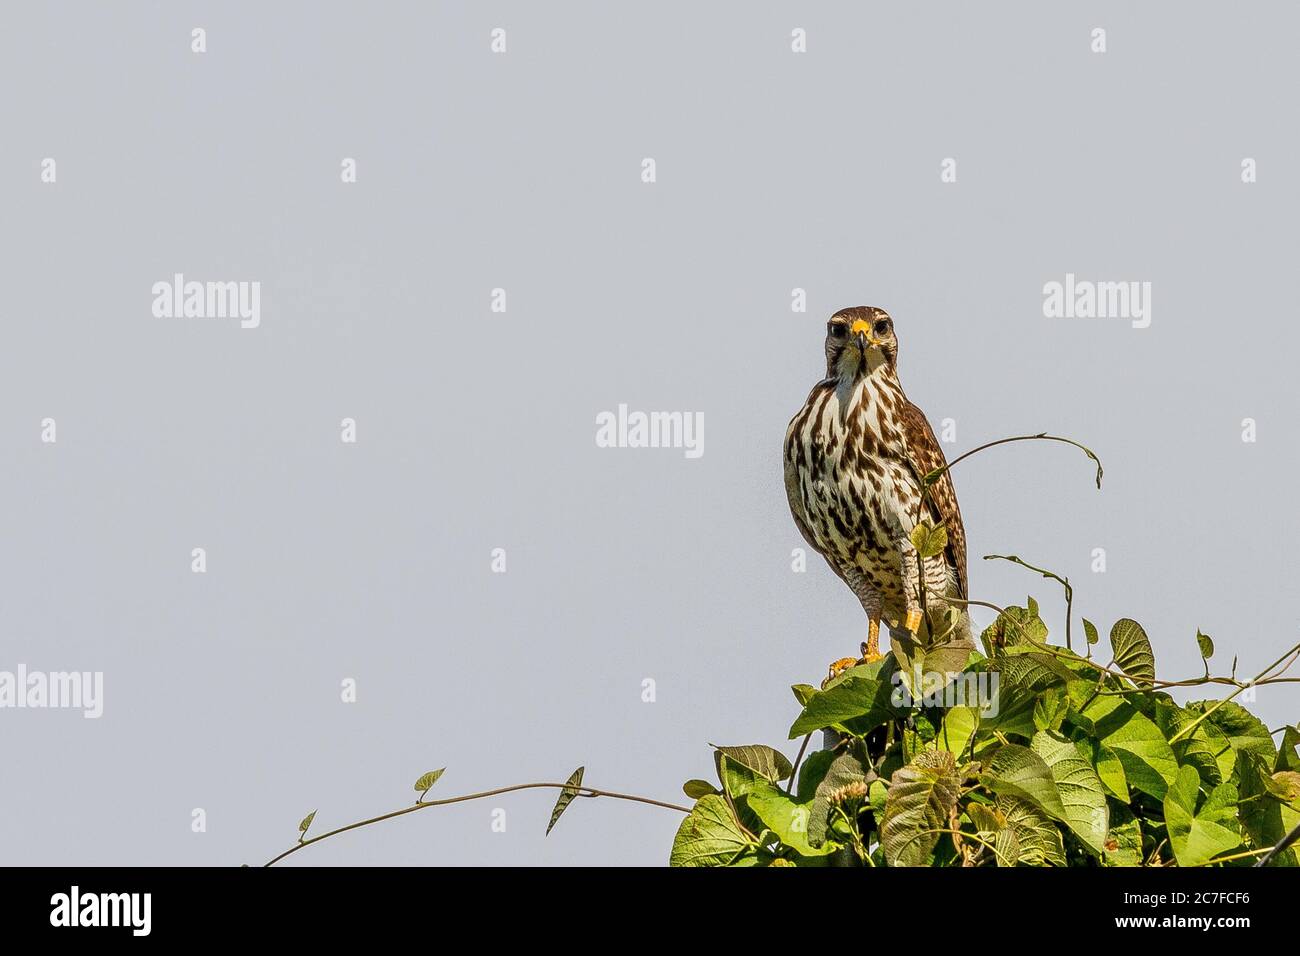 Niedlicher Adler, der auf einem hohen Busch unter dem klaren steht Himmel Stockfoto